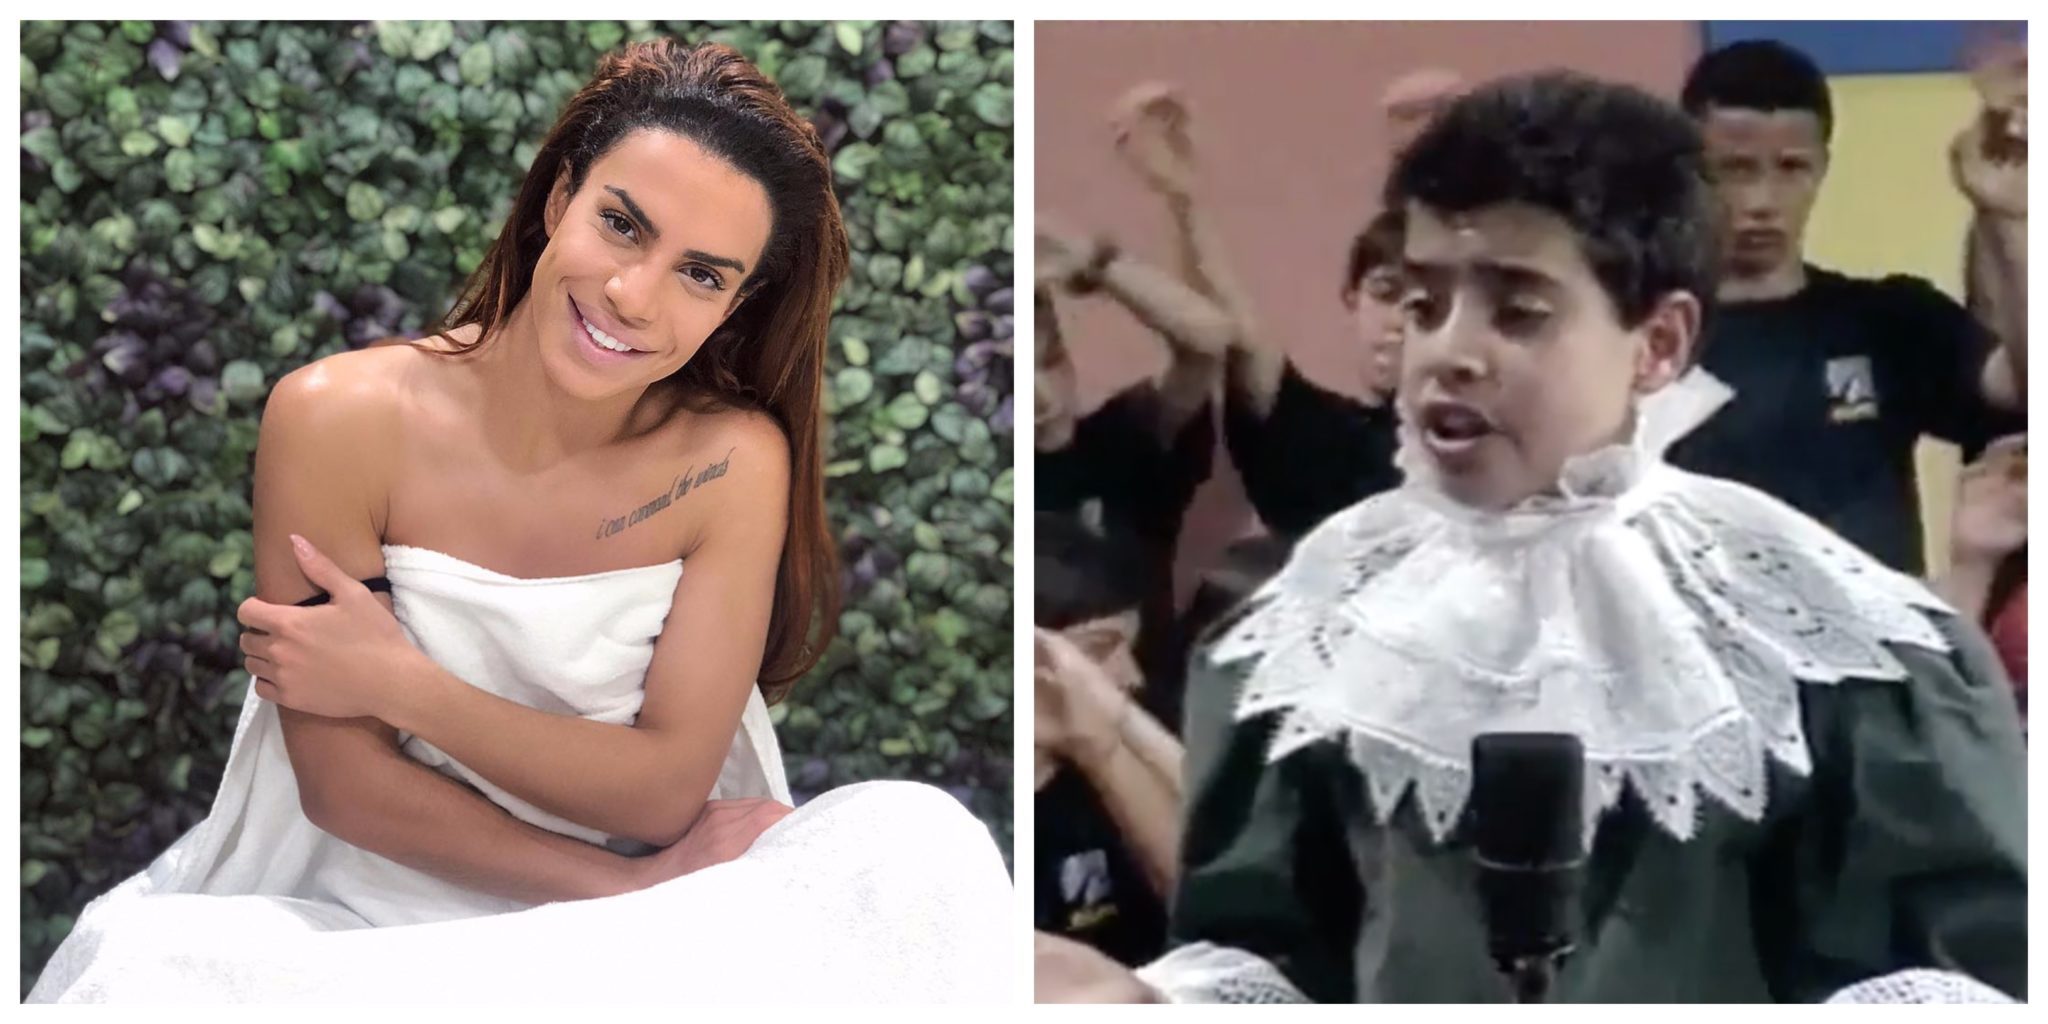 Carlos Costa crianca Carlos Costa partilha vídeo com 11 anos a cantar em programa de TV